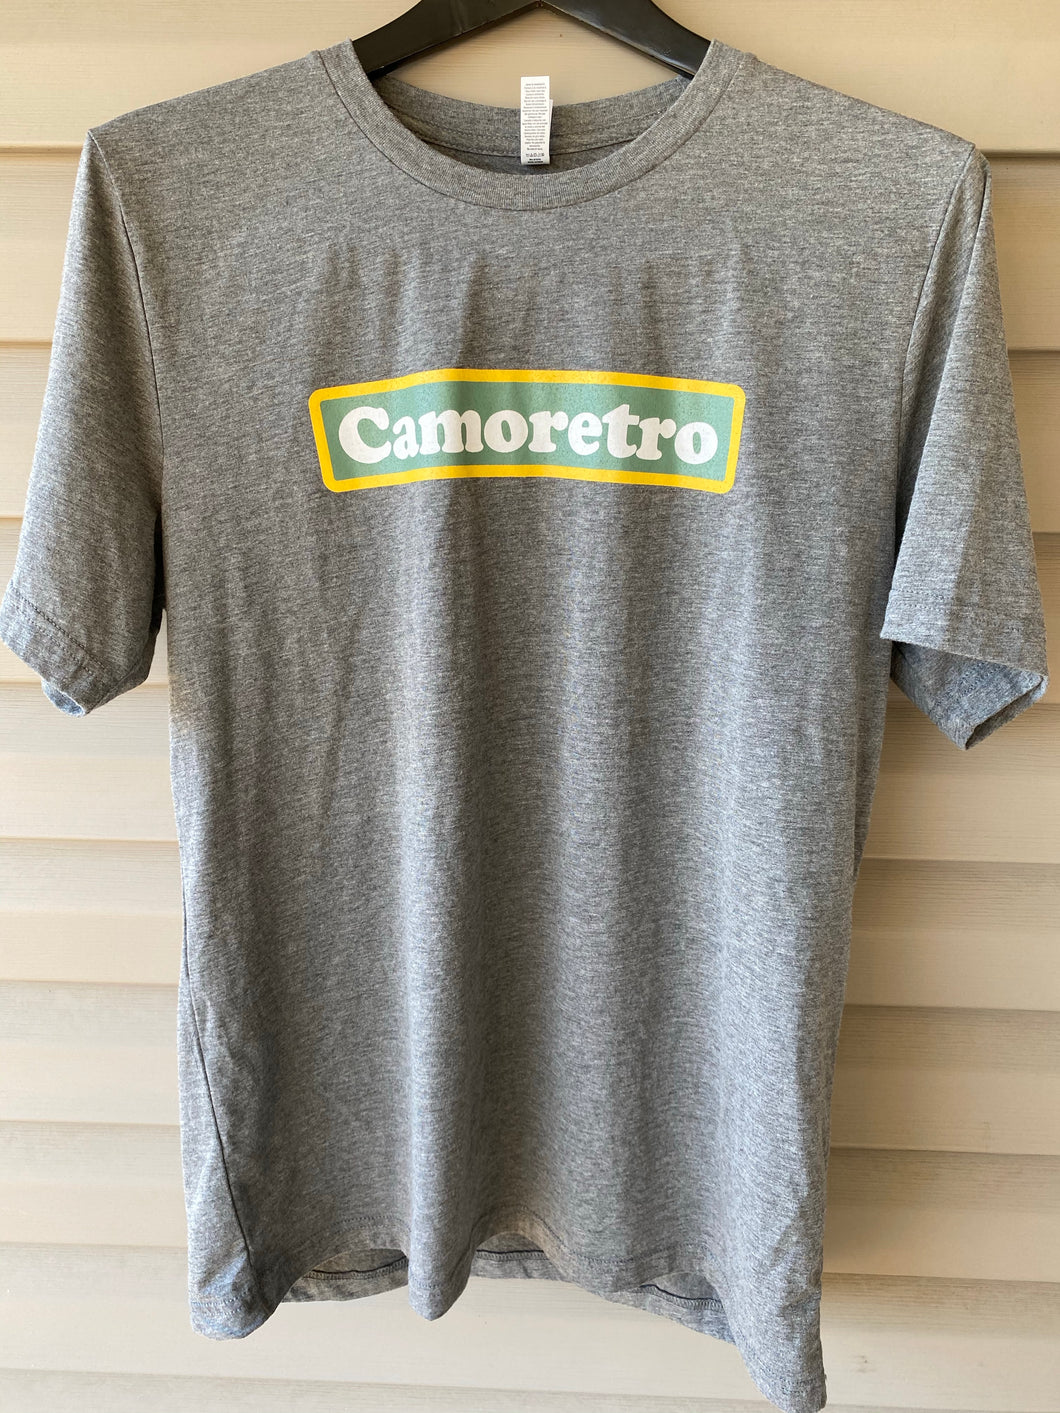 Camoretro Shirt (L)